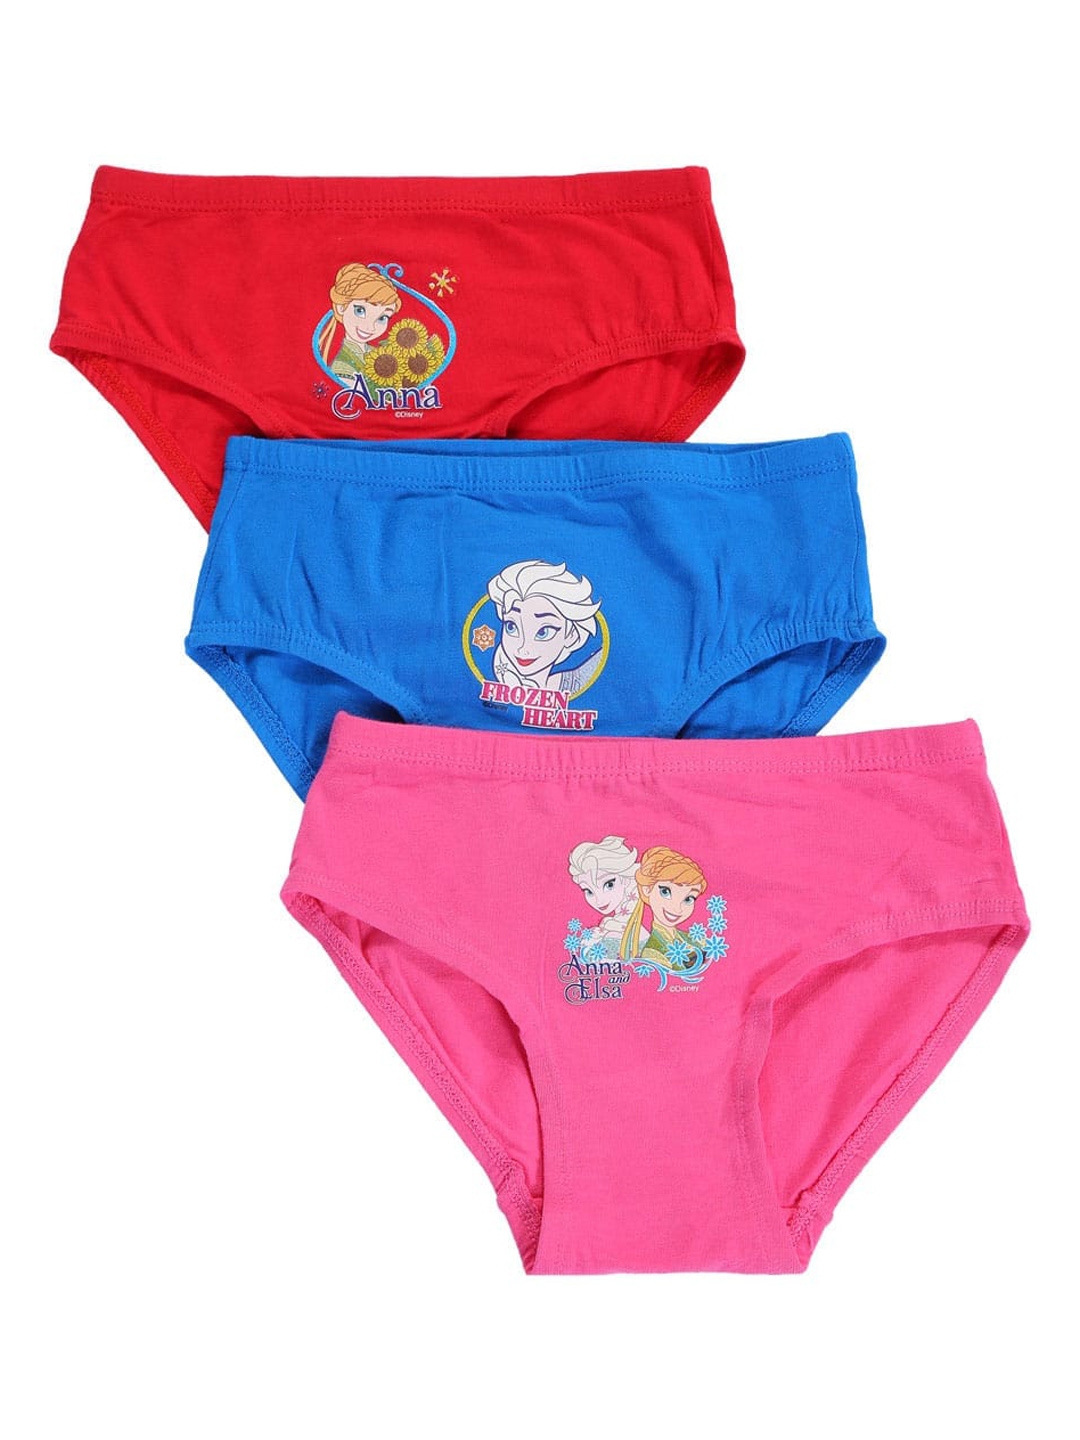 Nuluv Girls Minnie Mouse Printed Brief Underwear Innerwear